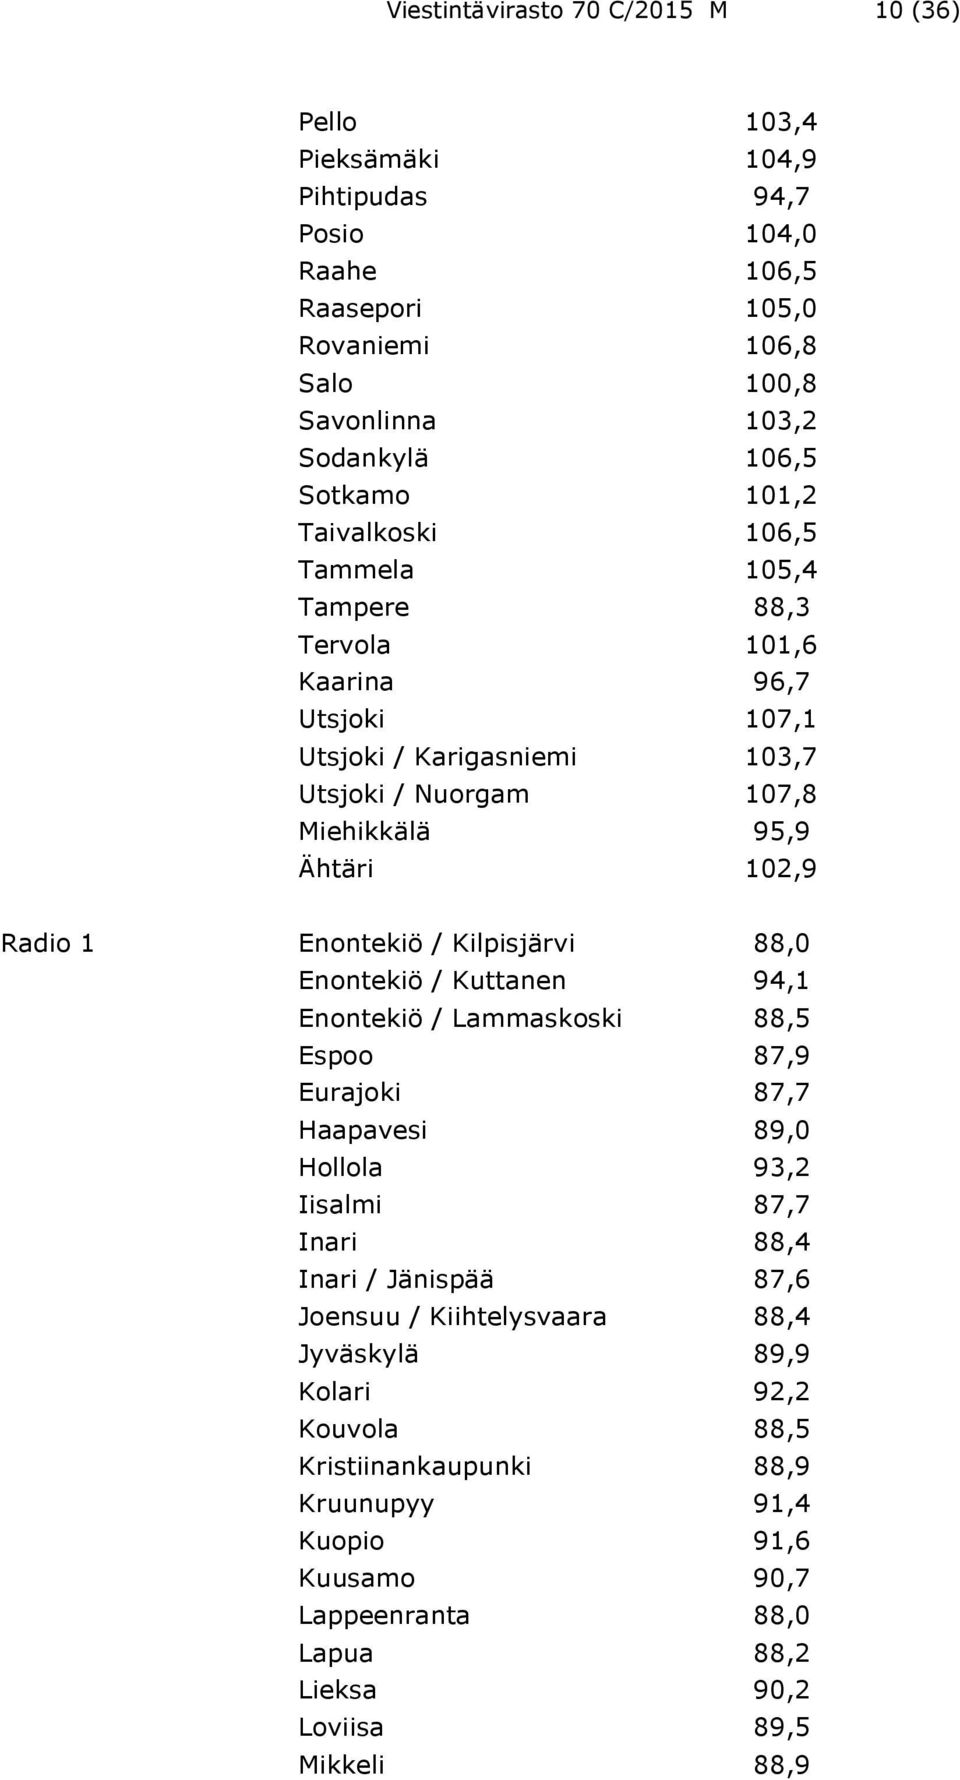 1 Enontekiö / Kilpisjärvi 88,0 Enontekiö / Kuttanen 94,1 Enontekiö / Lammaskoski 88,5 Espoo 87,9 Eurajoki 87,7 Haapavesi 89,0 Hollola 93,2 Iisalmi 87,7 Inari 88,4 Inari / Jänispää 87,6